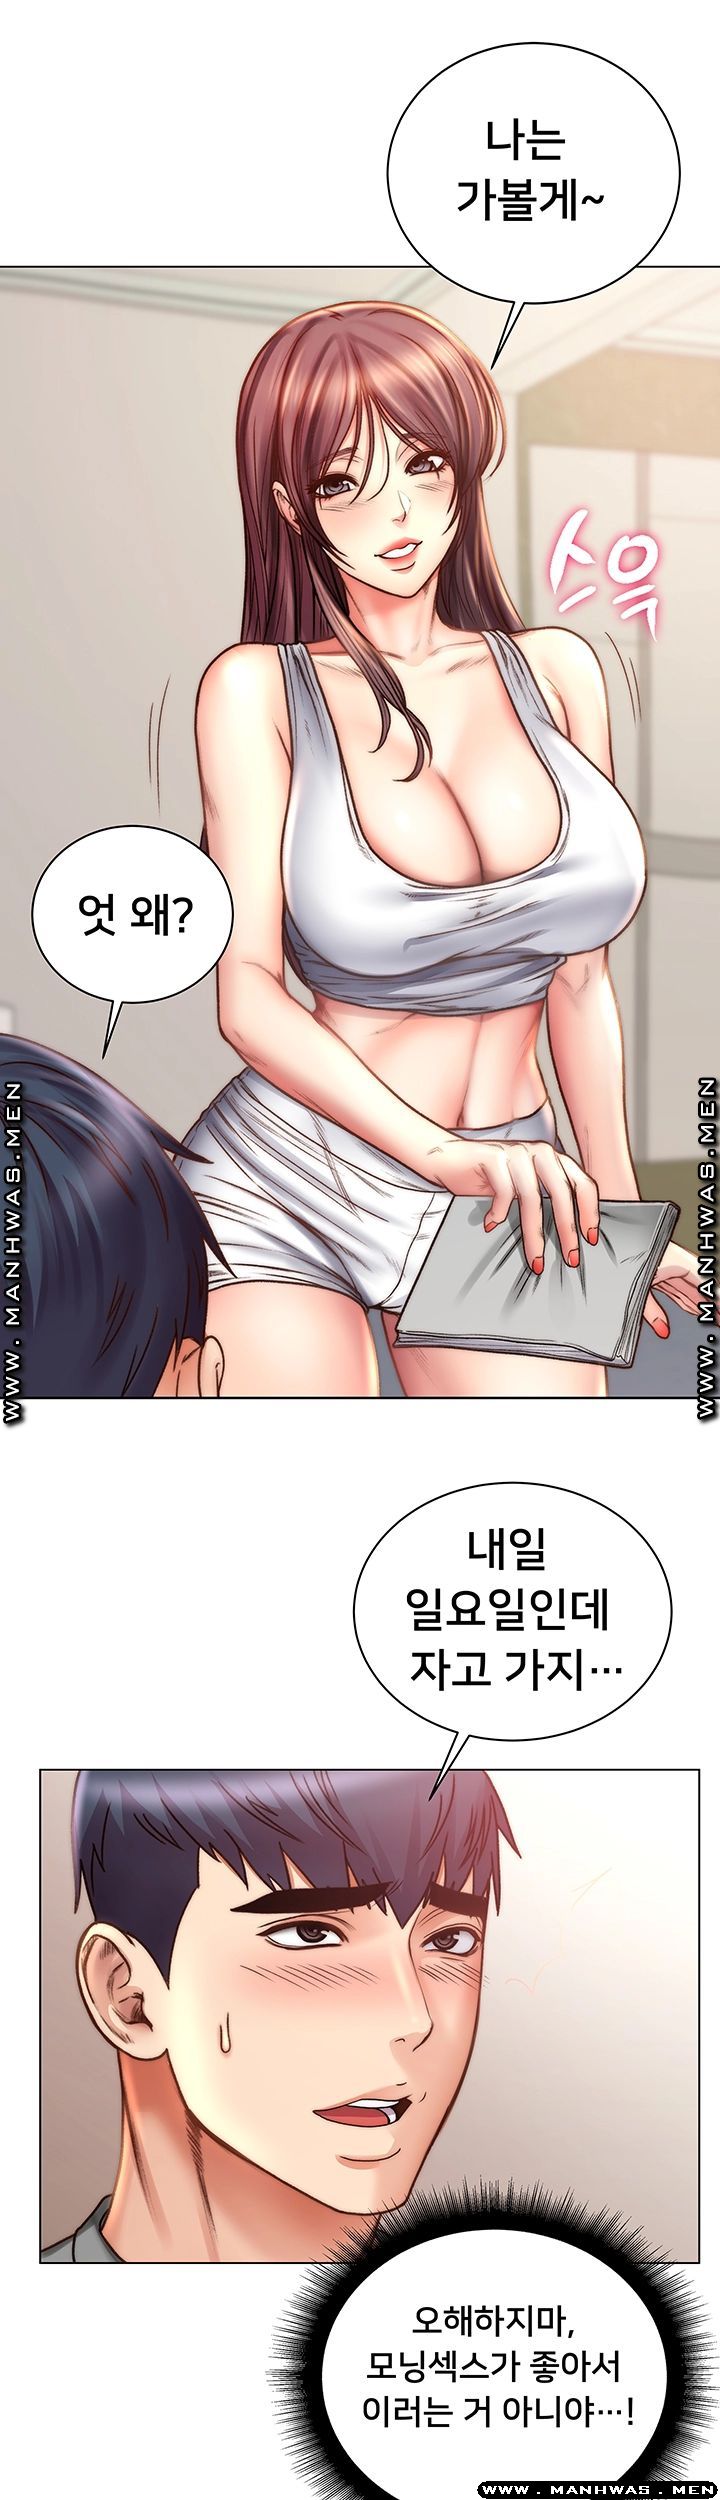 Eunhye